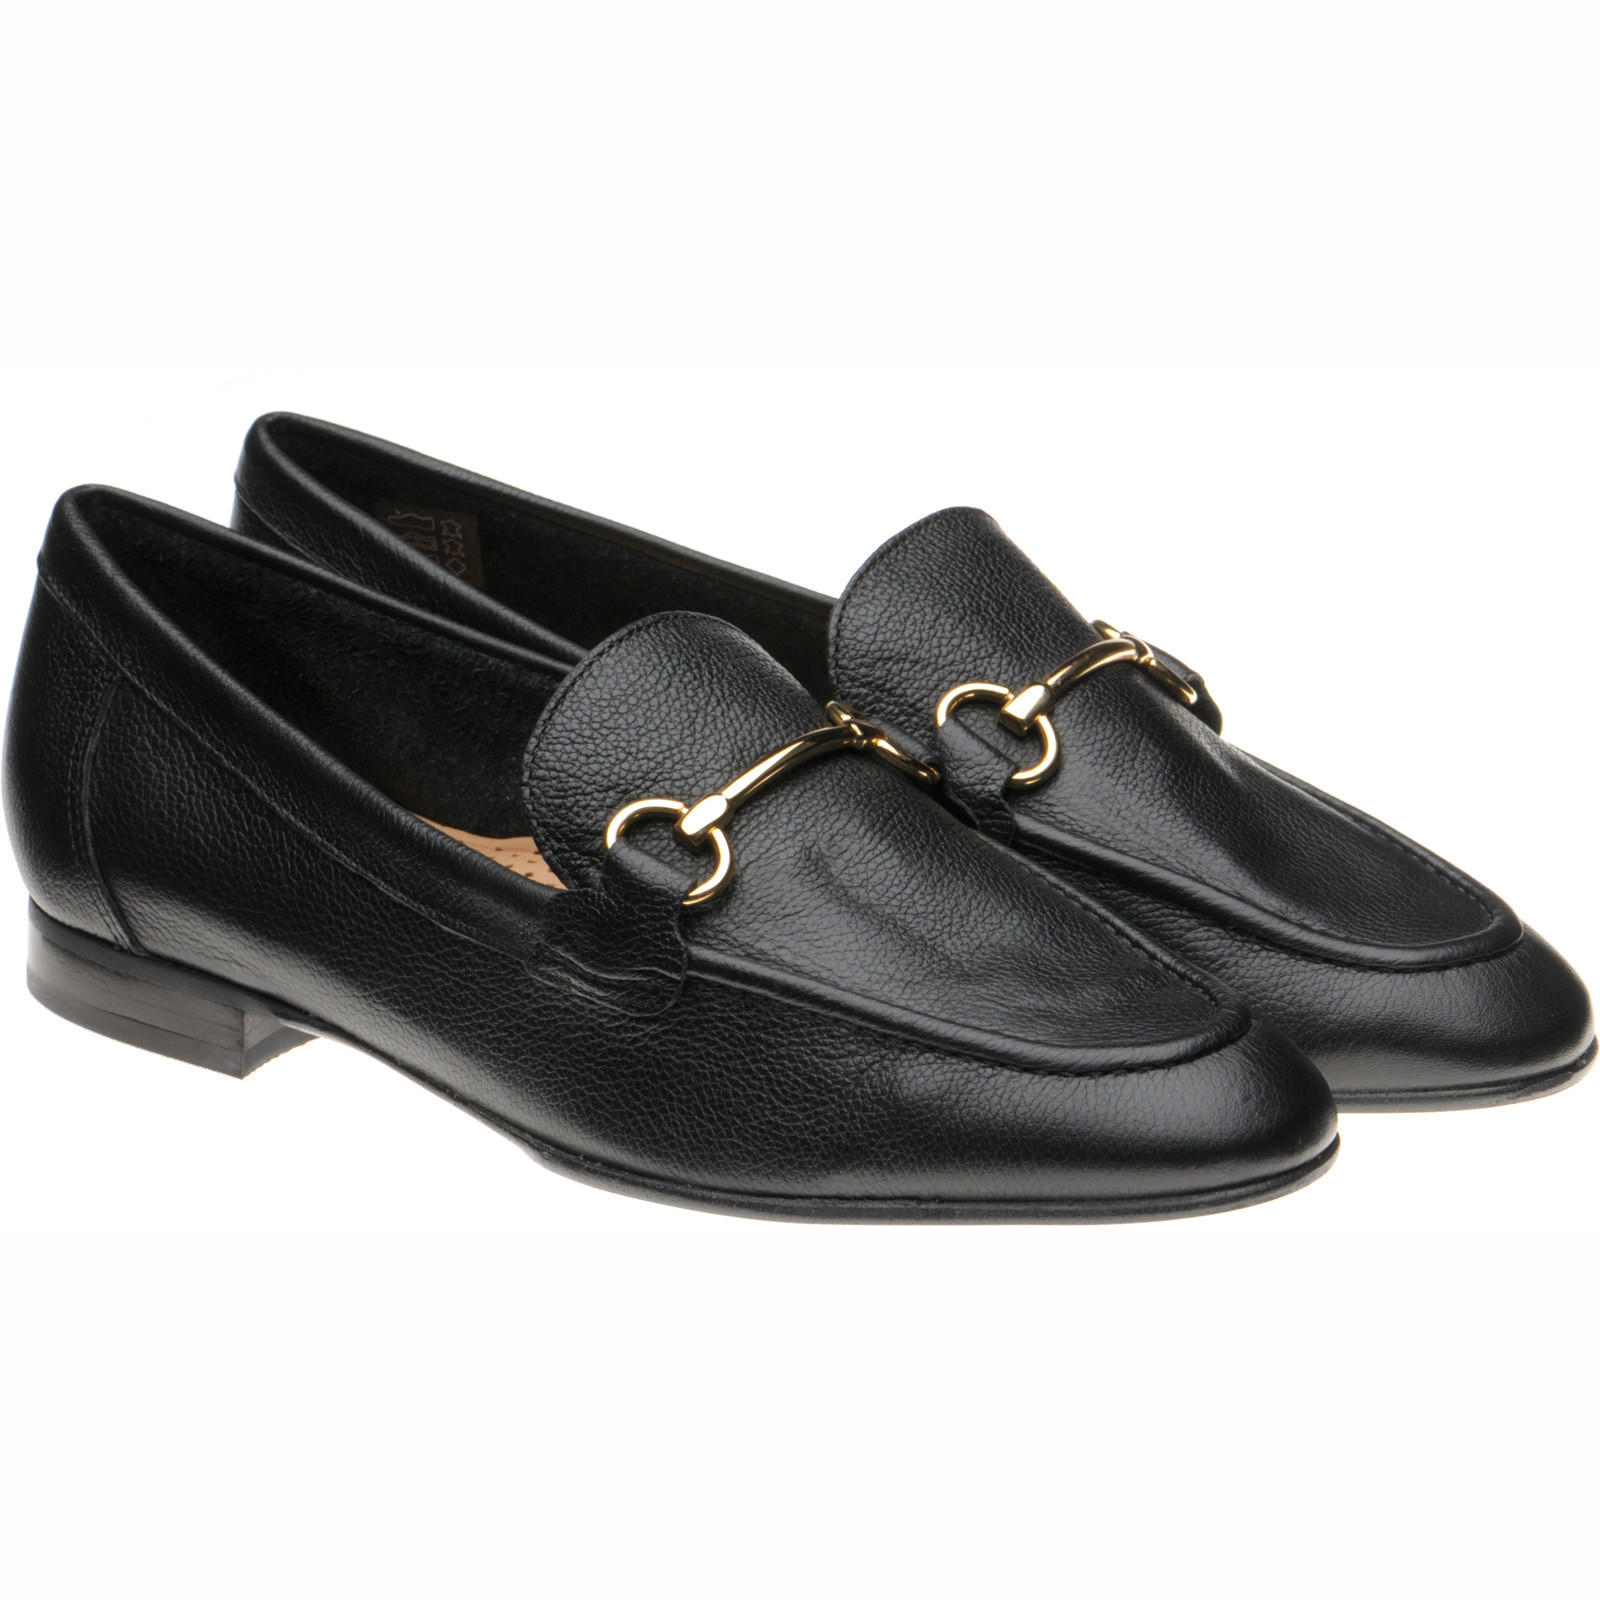 Herring shoes | Herring Ladies | Scarlette in Black at Herring Shoes